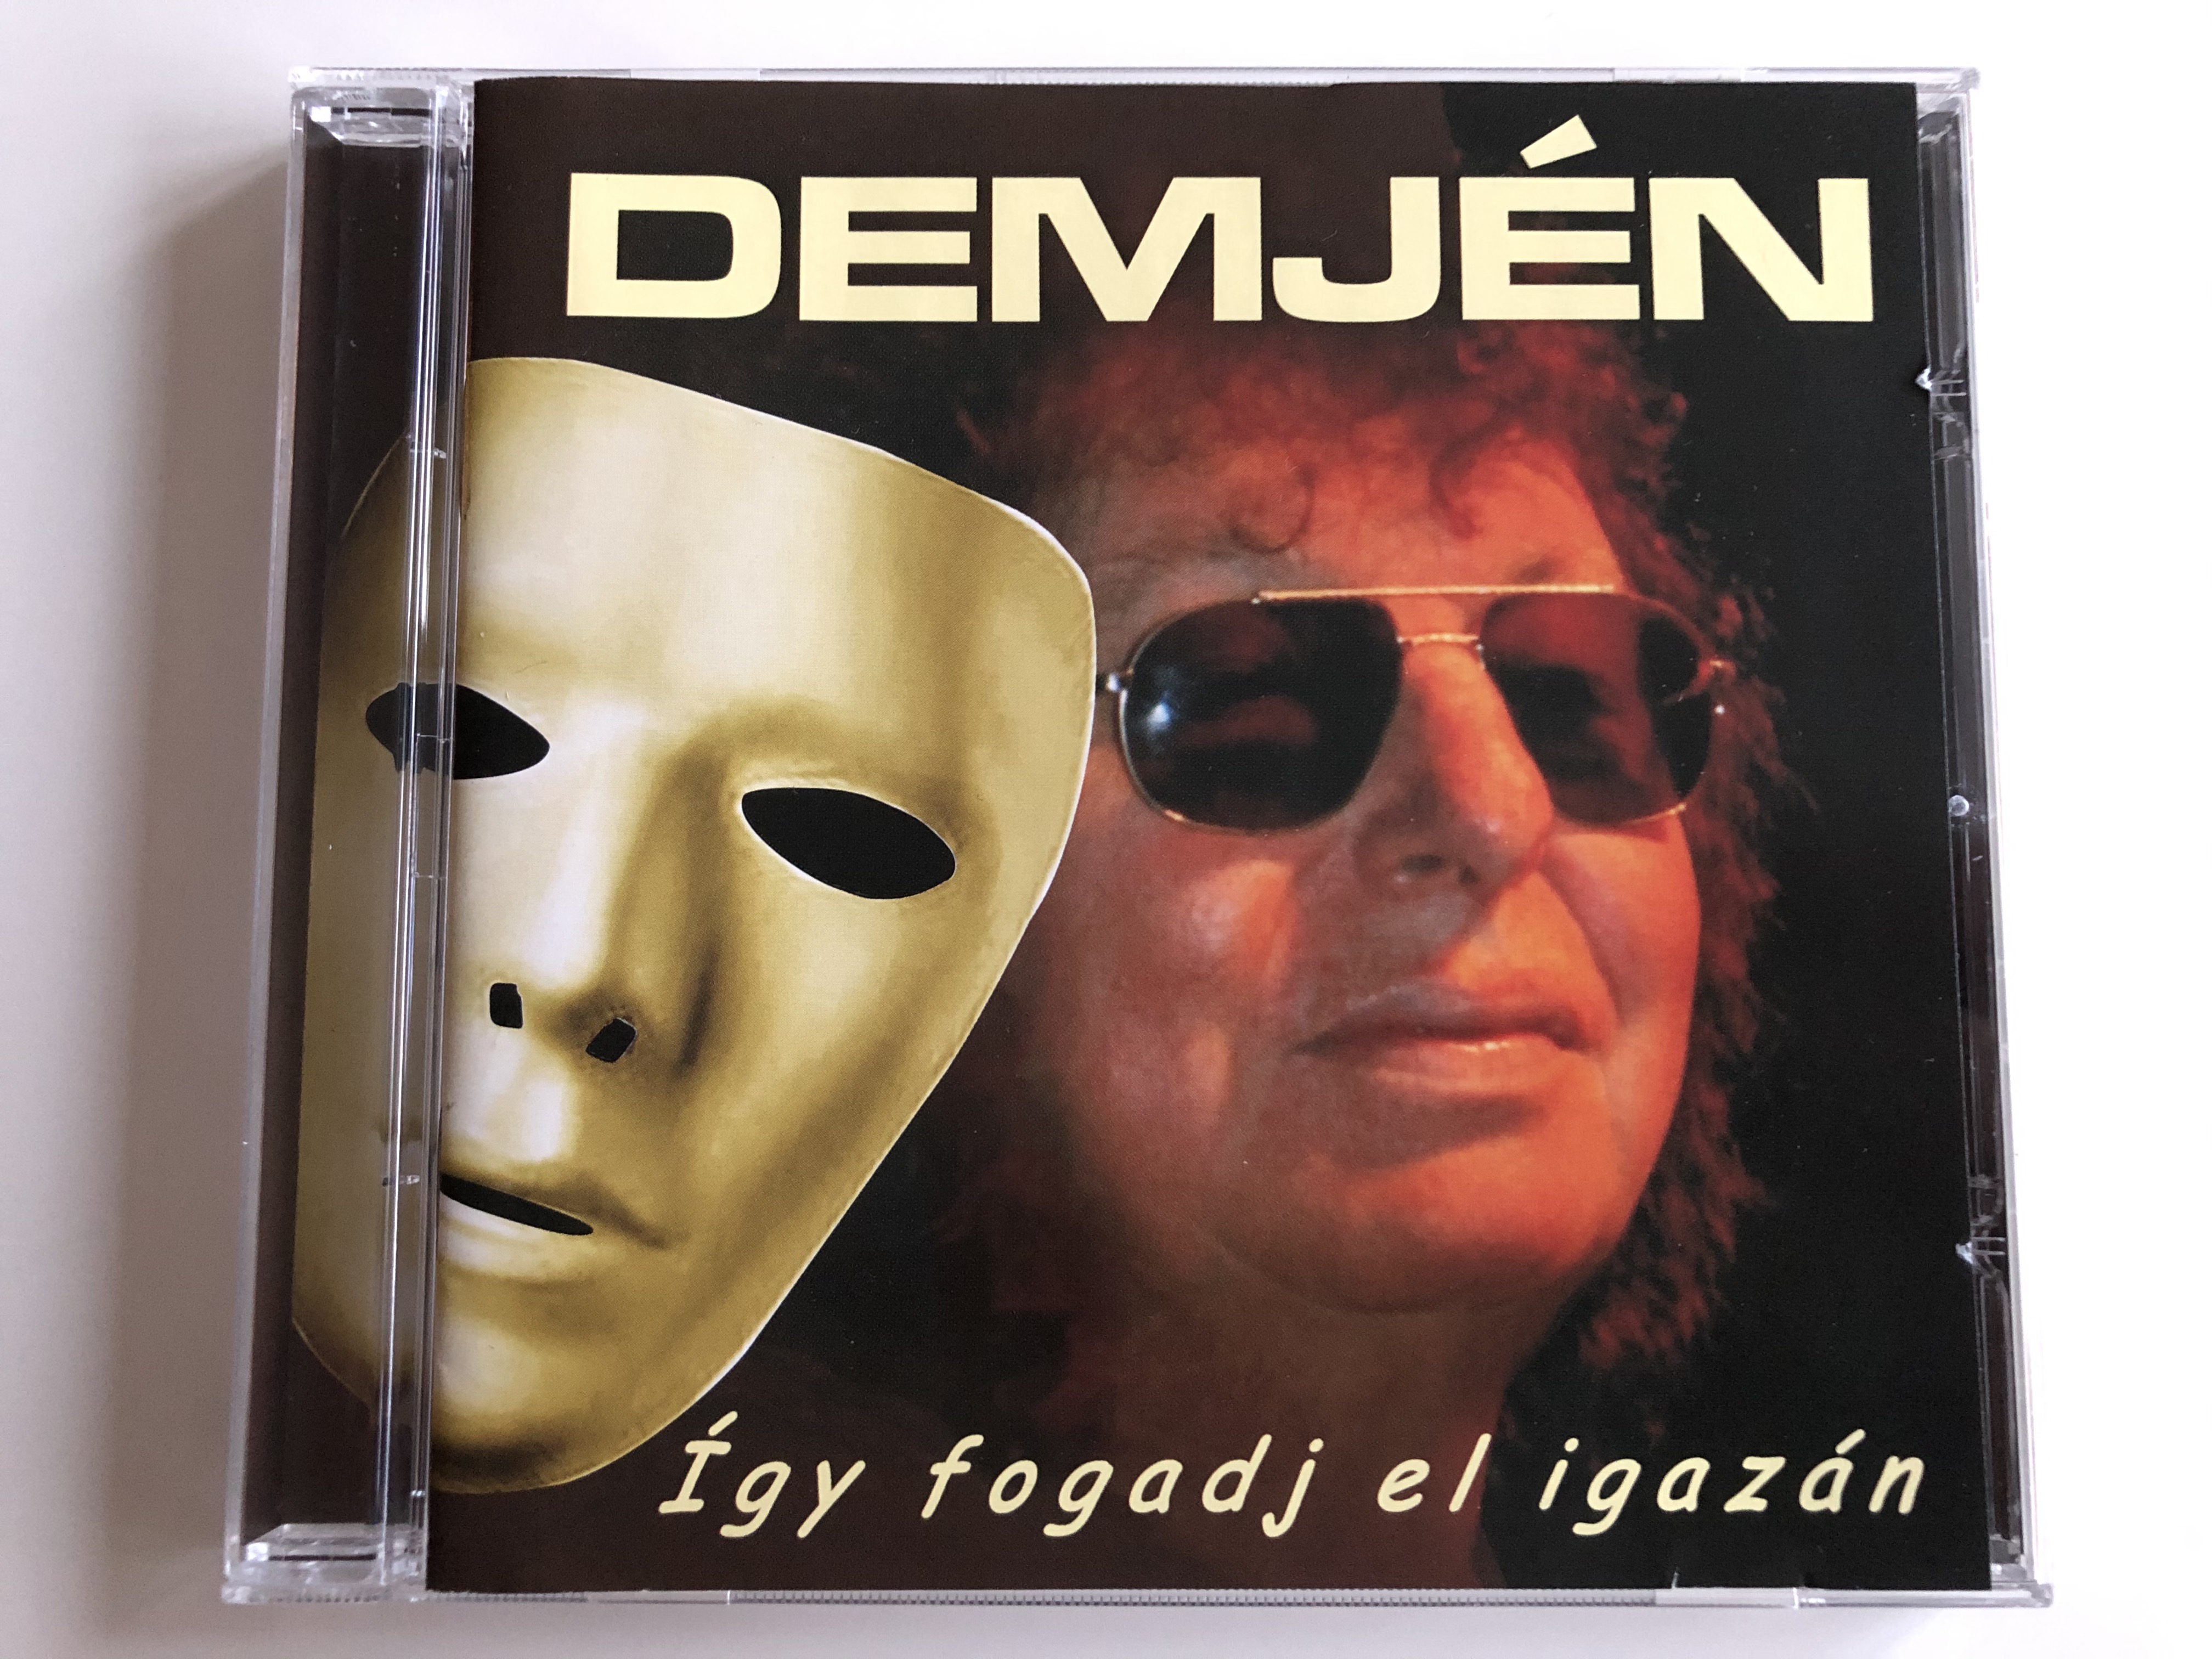 demj-n-gy-fogadj-el-igaz-n-r-r-records-audio-cd-2010-rr-cd-016-1-.jpg